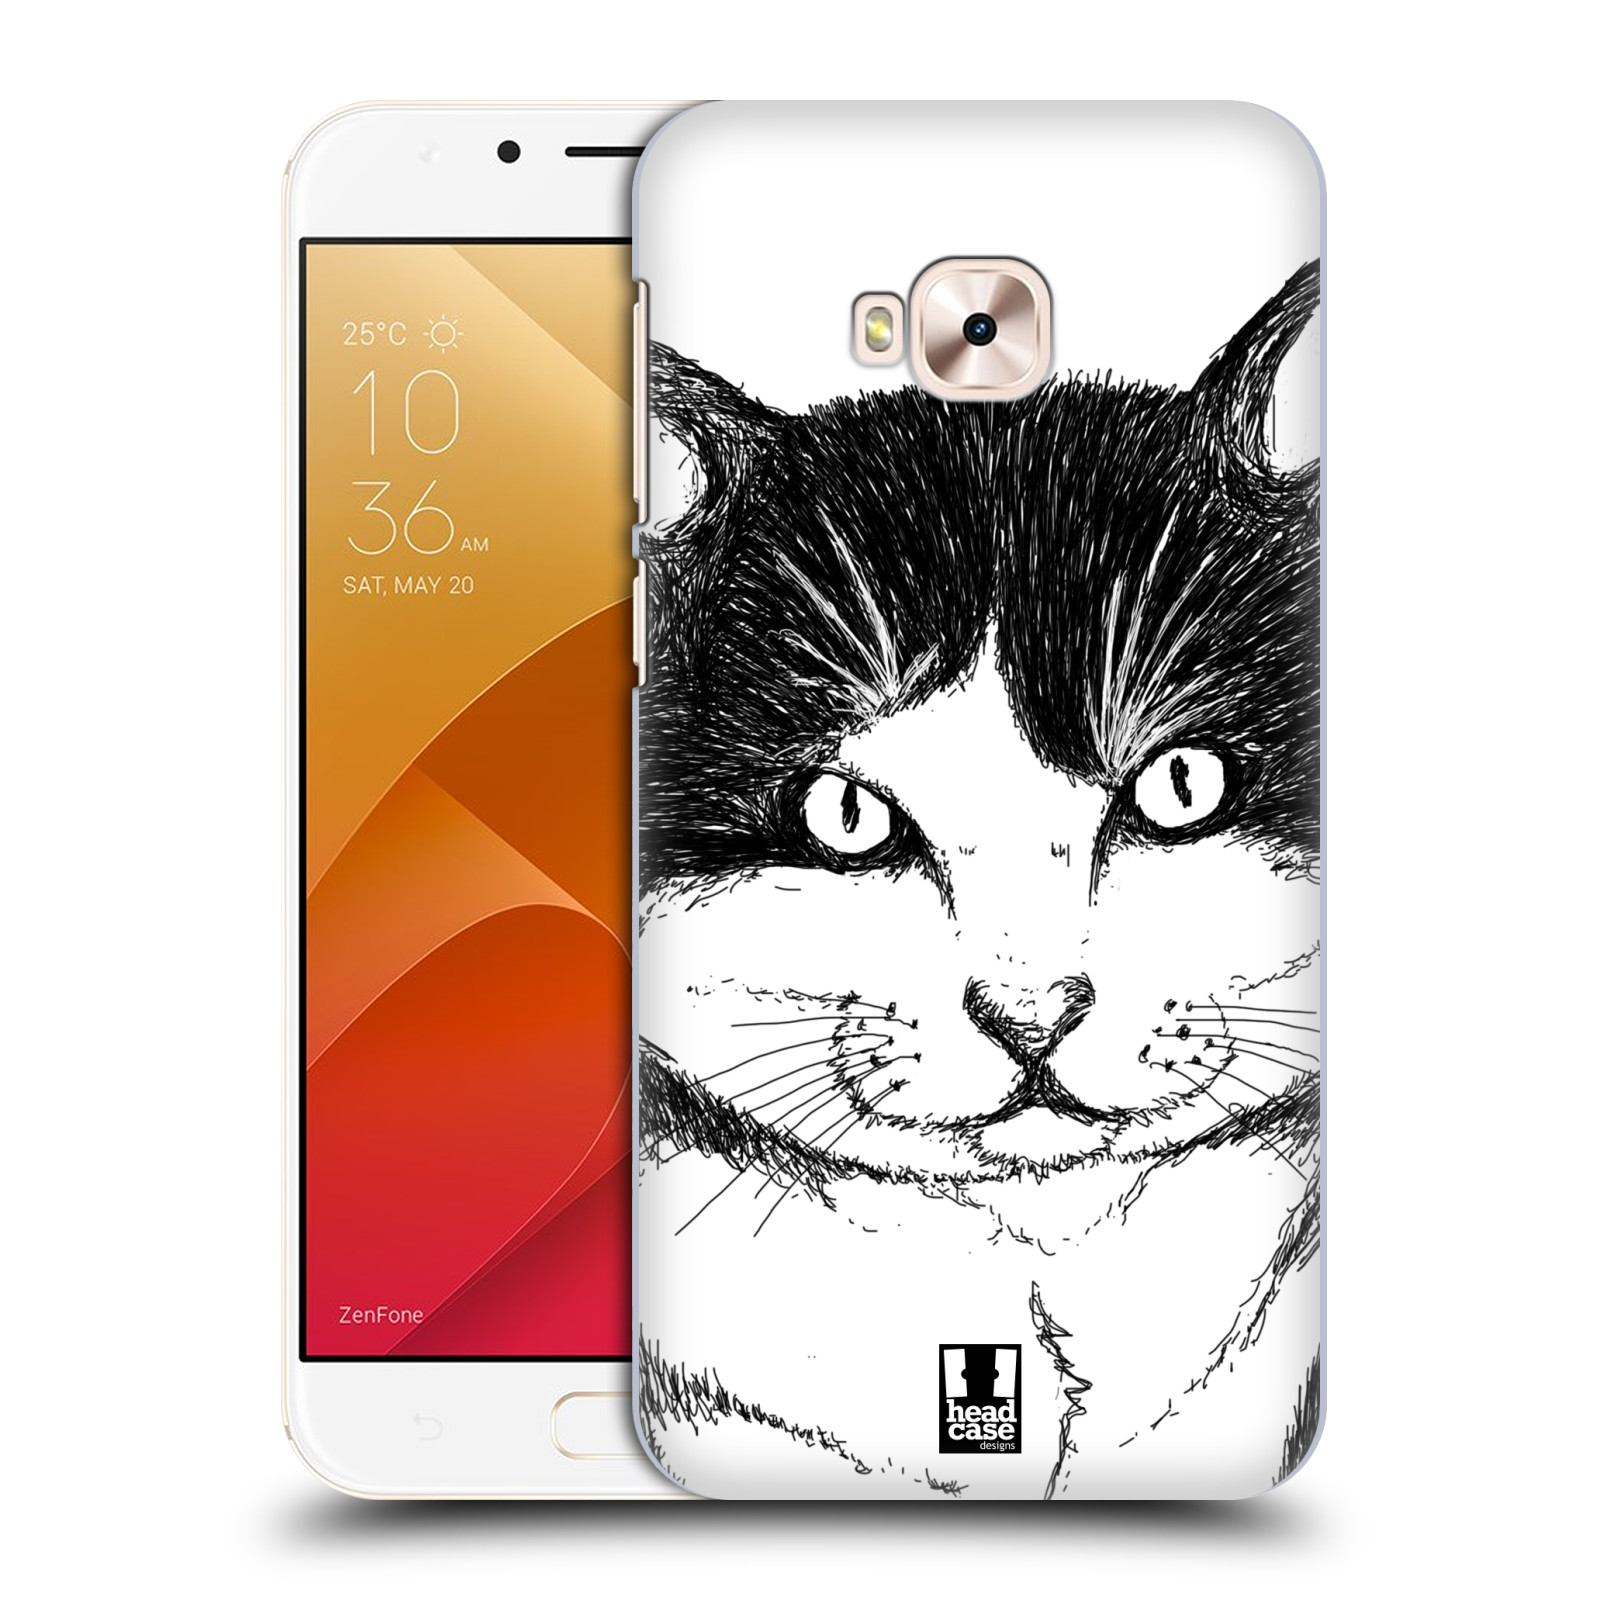 HEAD CASE plastový obal na mobil Asus Zenfone 4 Selfie Pro ZD552KL vzor Kreslená zvířátka černá a bílá kočka